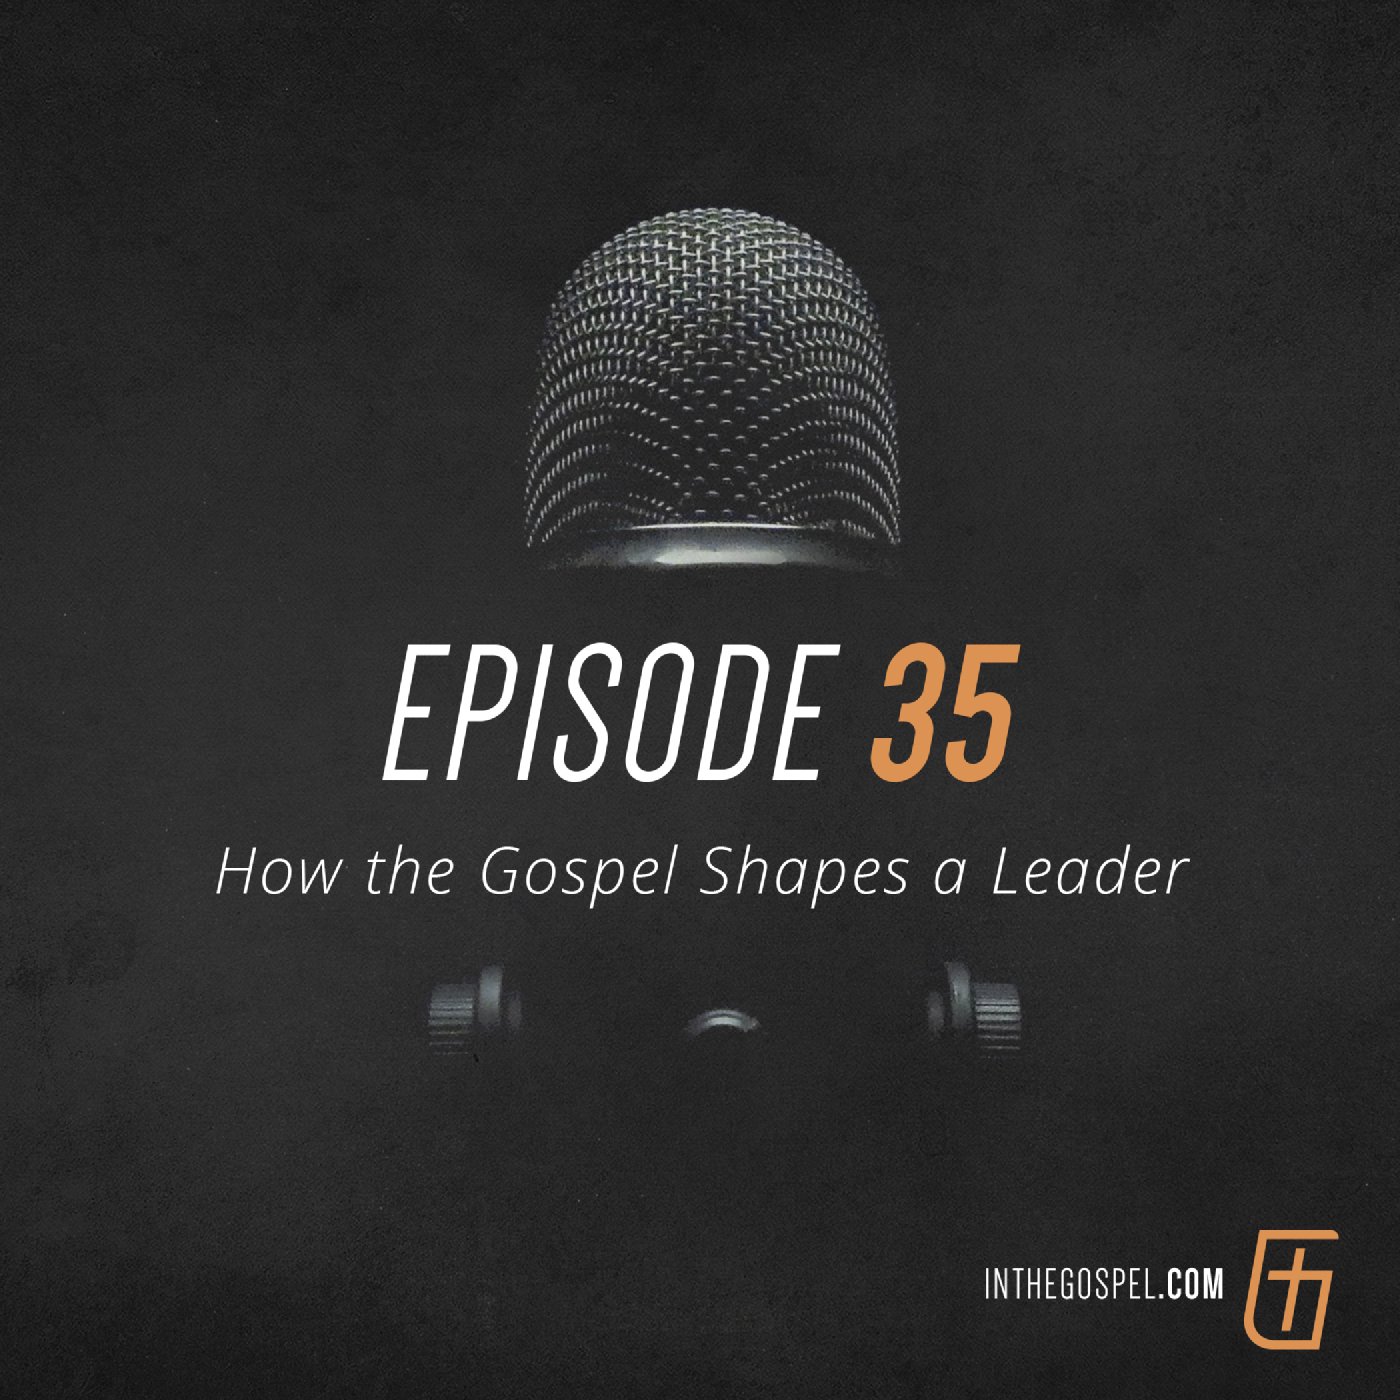 Episode 35: How the Gospel Shapes a Leader